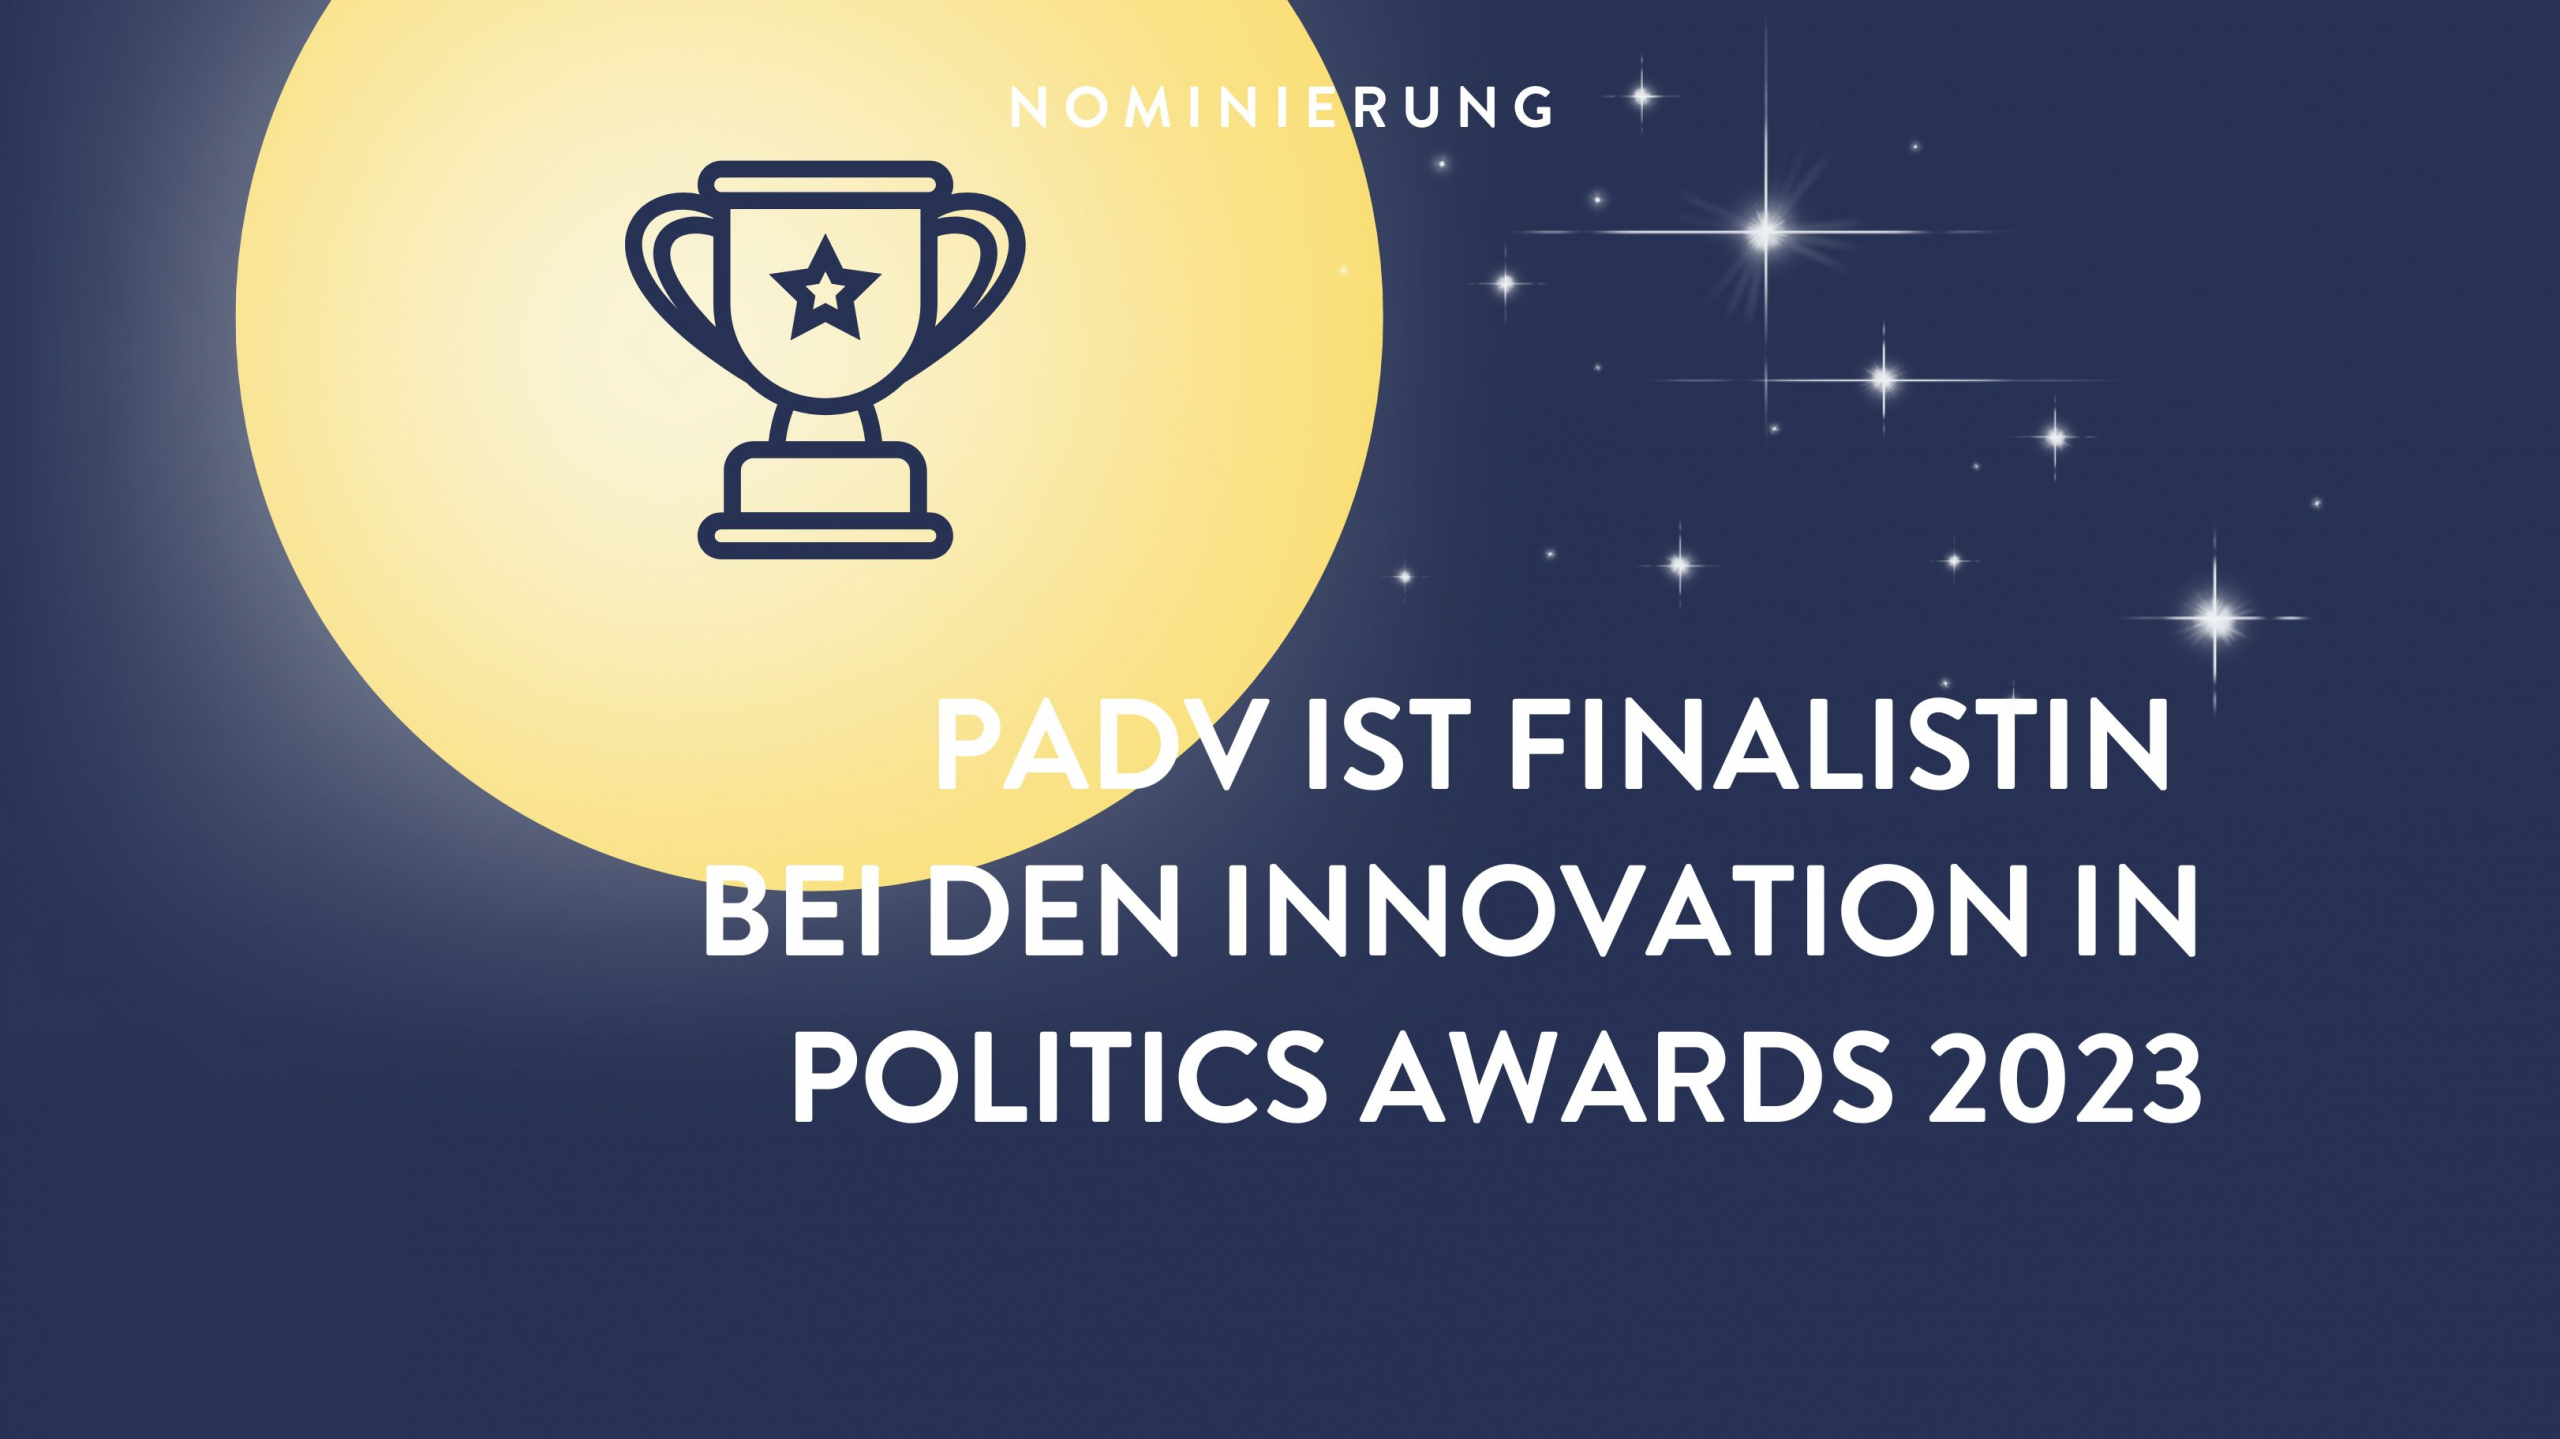 PadV ist nominiert bei den Innovation Politics Awards 2023